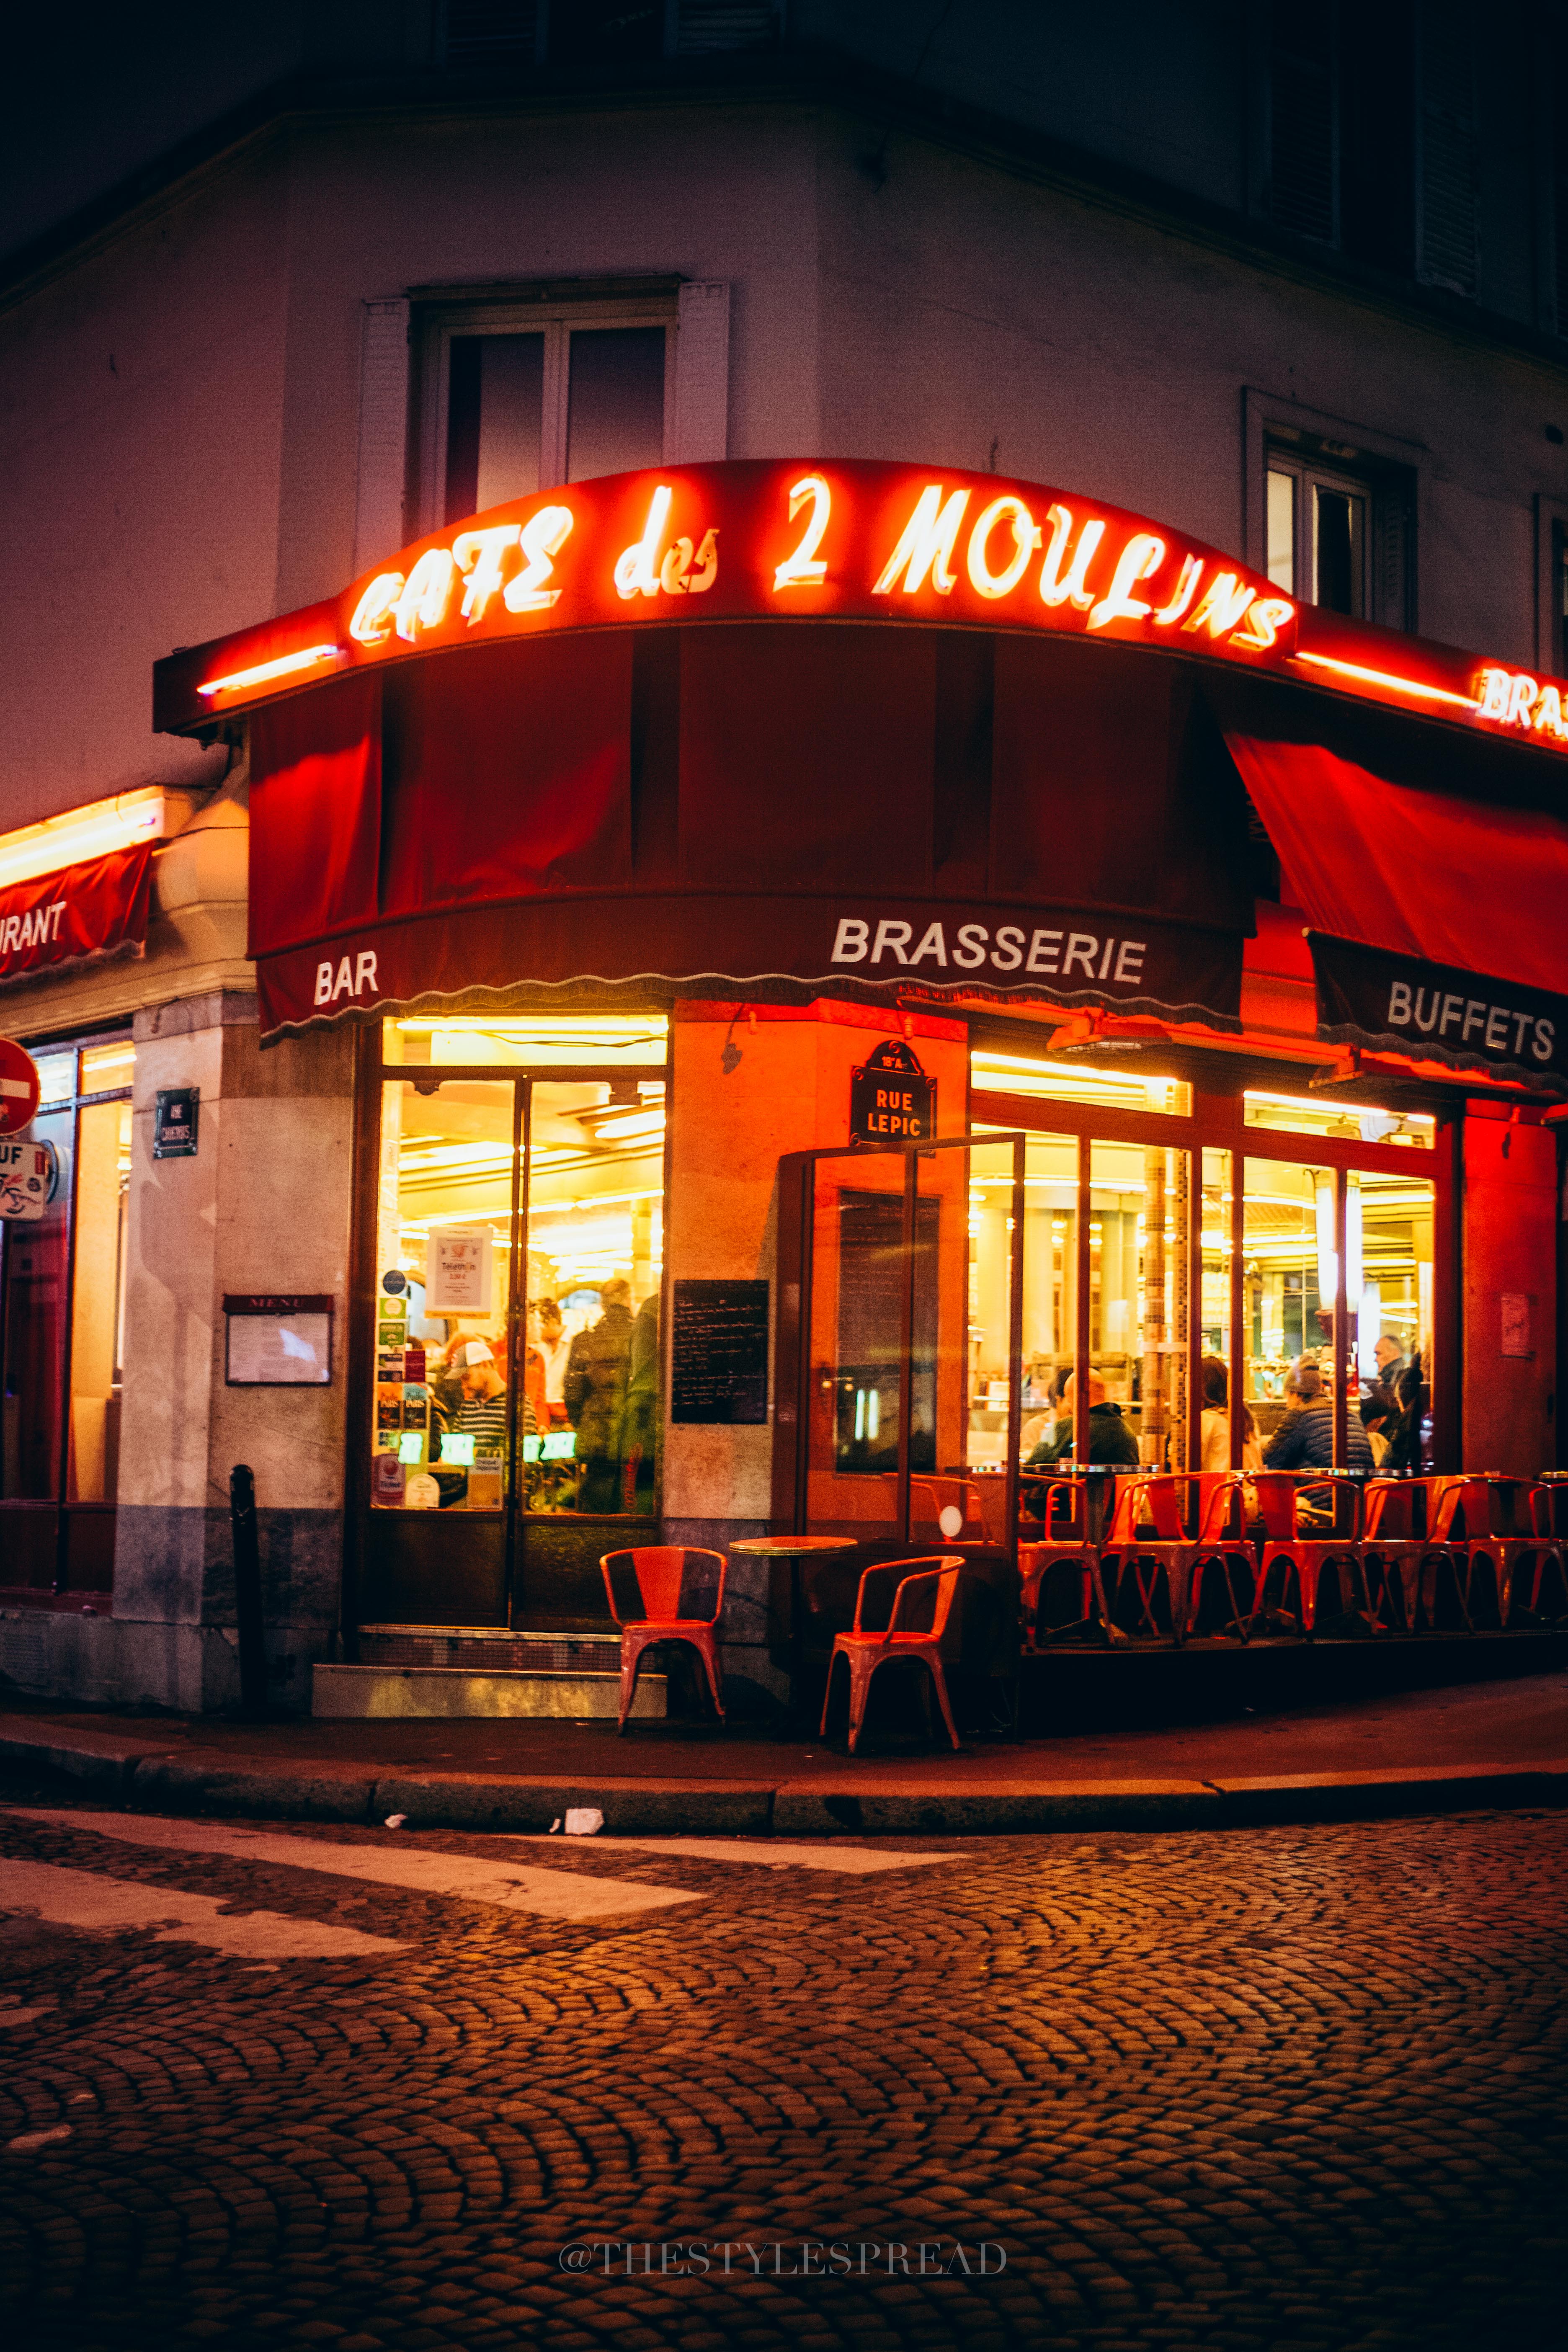 Café des Deux Moulins